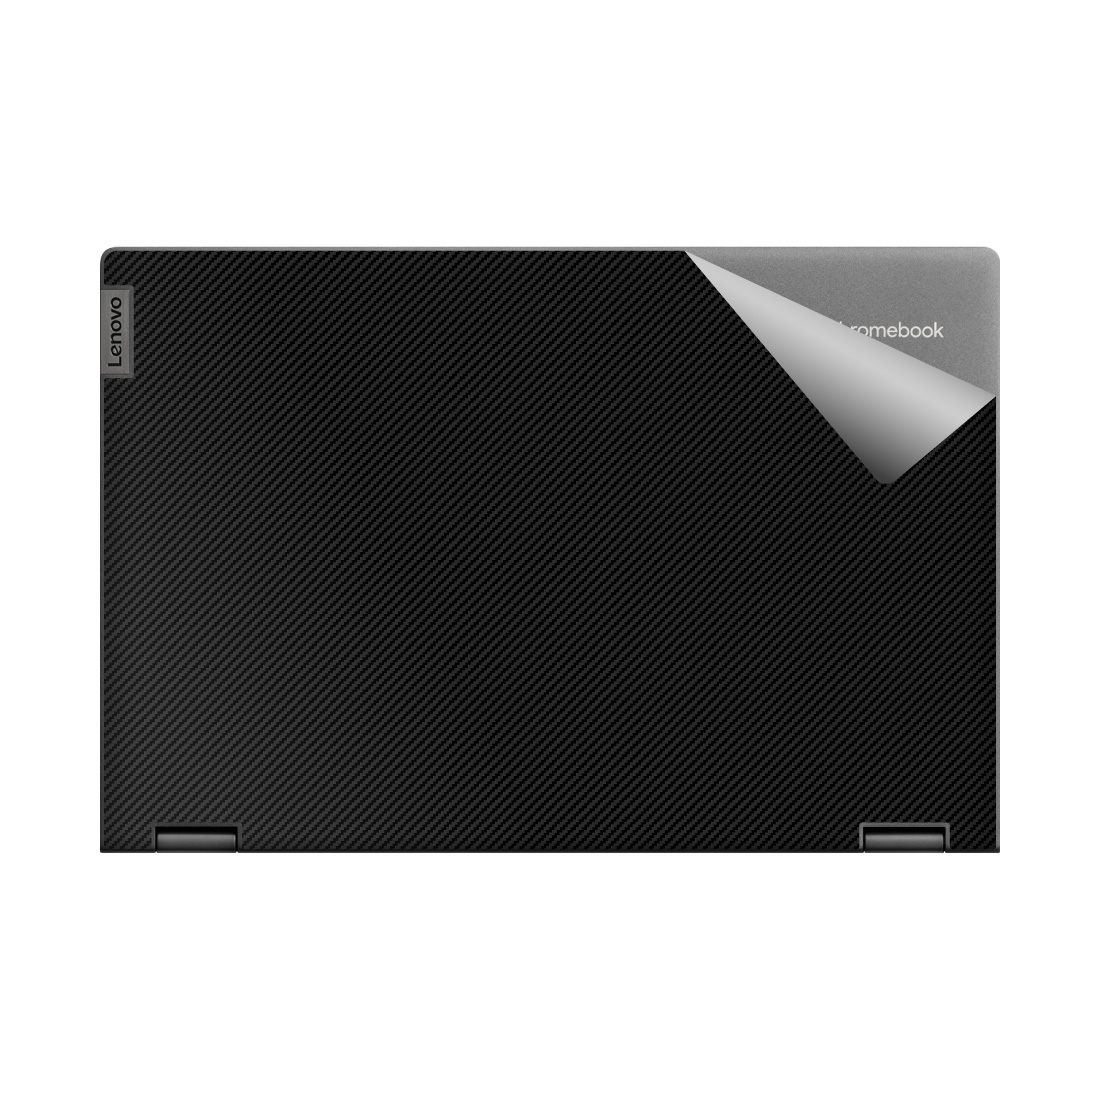 スキンシール Lenovo IdeaPad Flex550i Chromebook (13.3)  日本製 自社製造直販